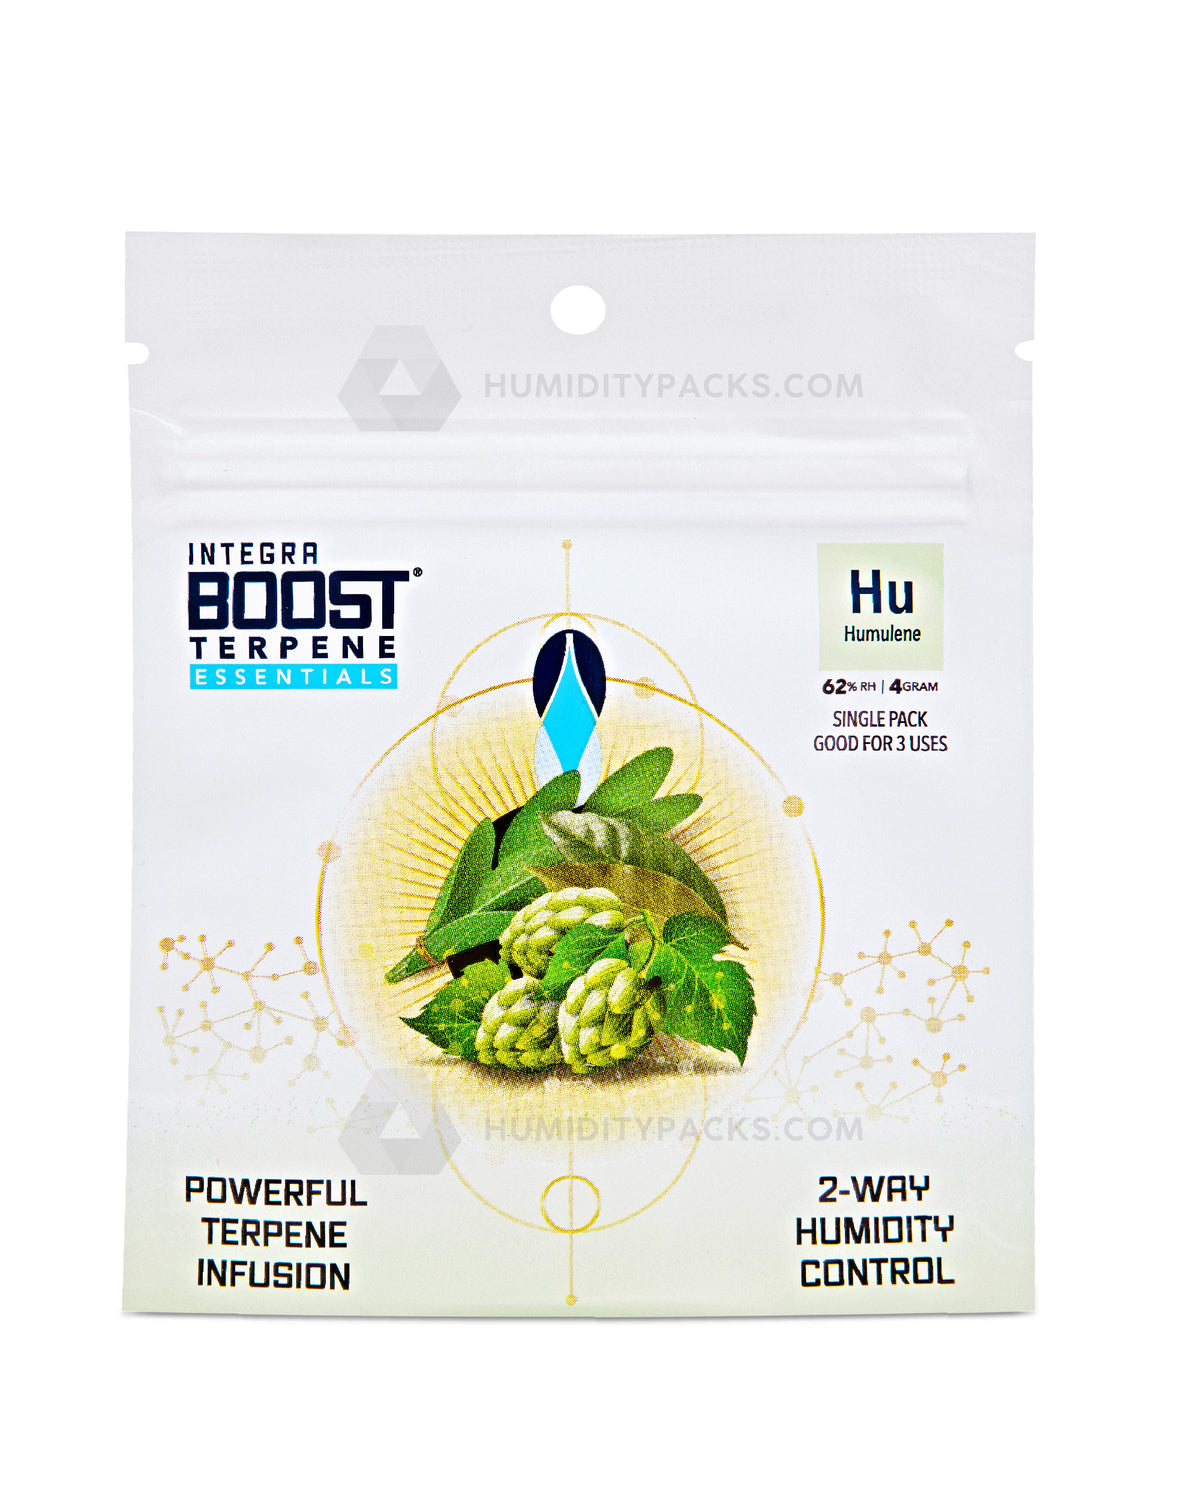 Integra Boost 4 Gram 2-Way Terpene Essentials Humulene Humidity Packs (62%) 48-Box Humidity Packs - 2